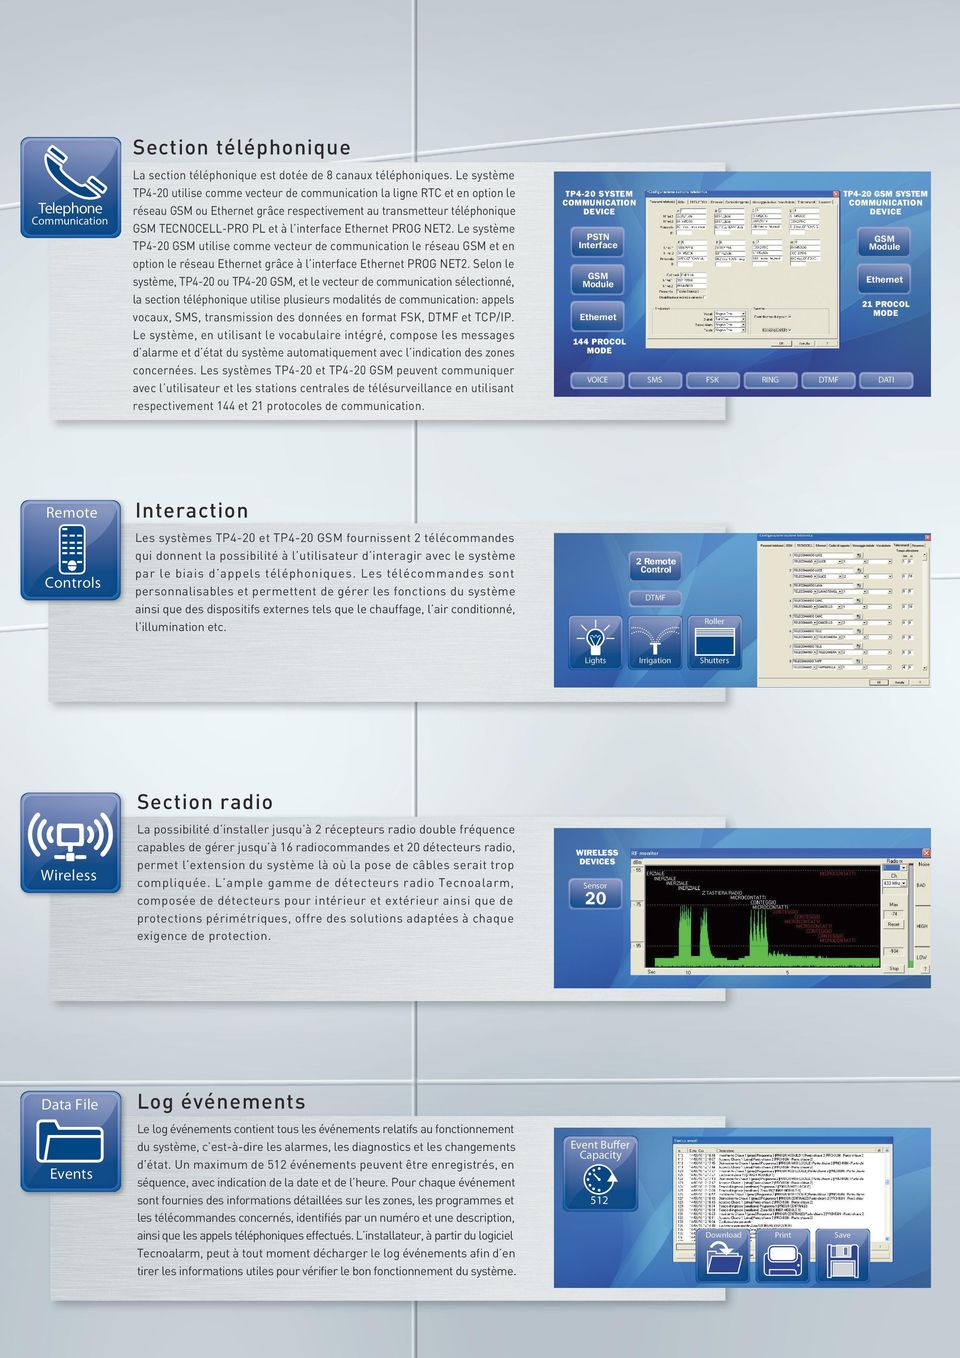 Le système TP- utilise comme vecteur de communication le réseau et en option le réseau grâce à l interface PROG NET.